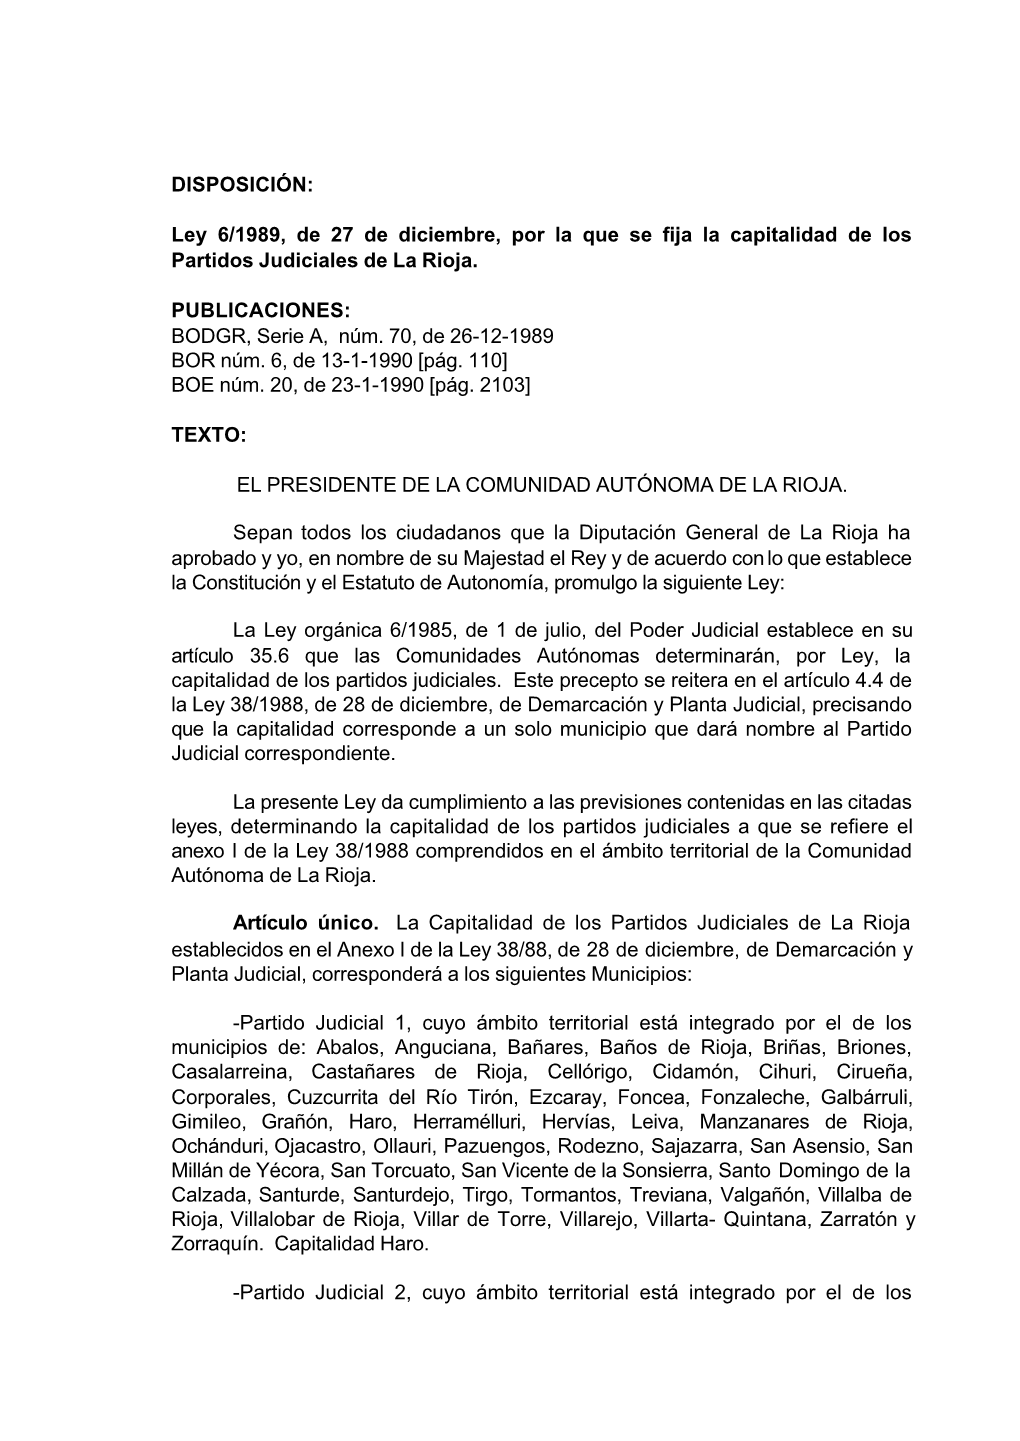 Ley 6/1989, De 27 De Diciembre, Por La Que Se Fija La Capitalidad De Los Partidos Judiciales De La Rioja